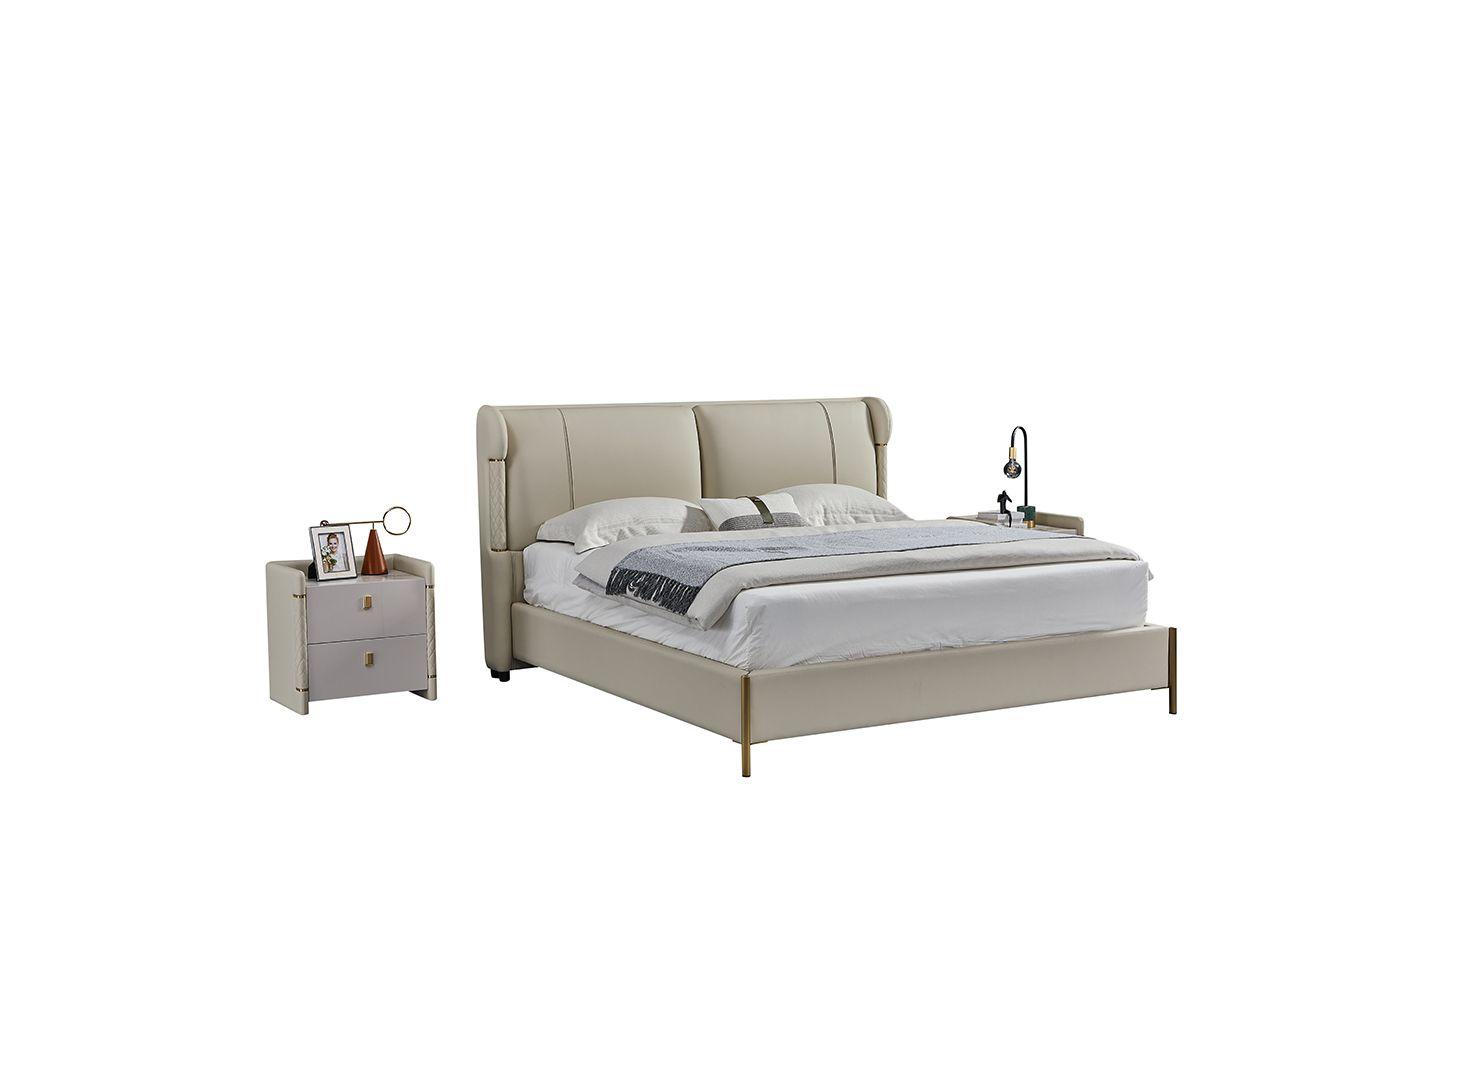 Contemporary, Modern Platform Bedroom Set B-Y2007-Q / NS-Y2007 B-Y2007-Q-3PC in Gray Genuine Leather